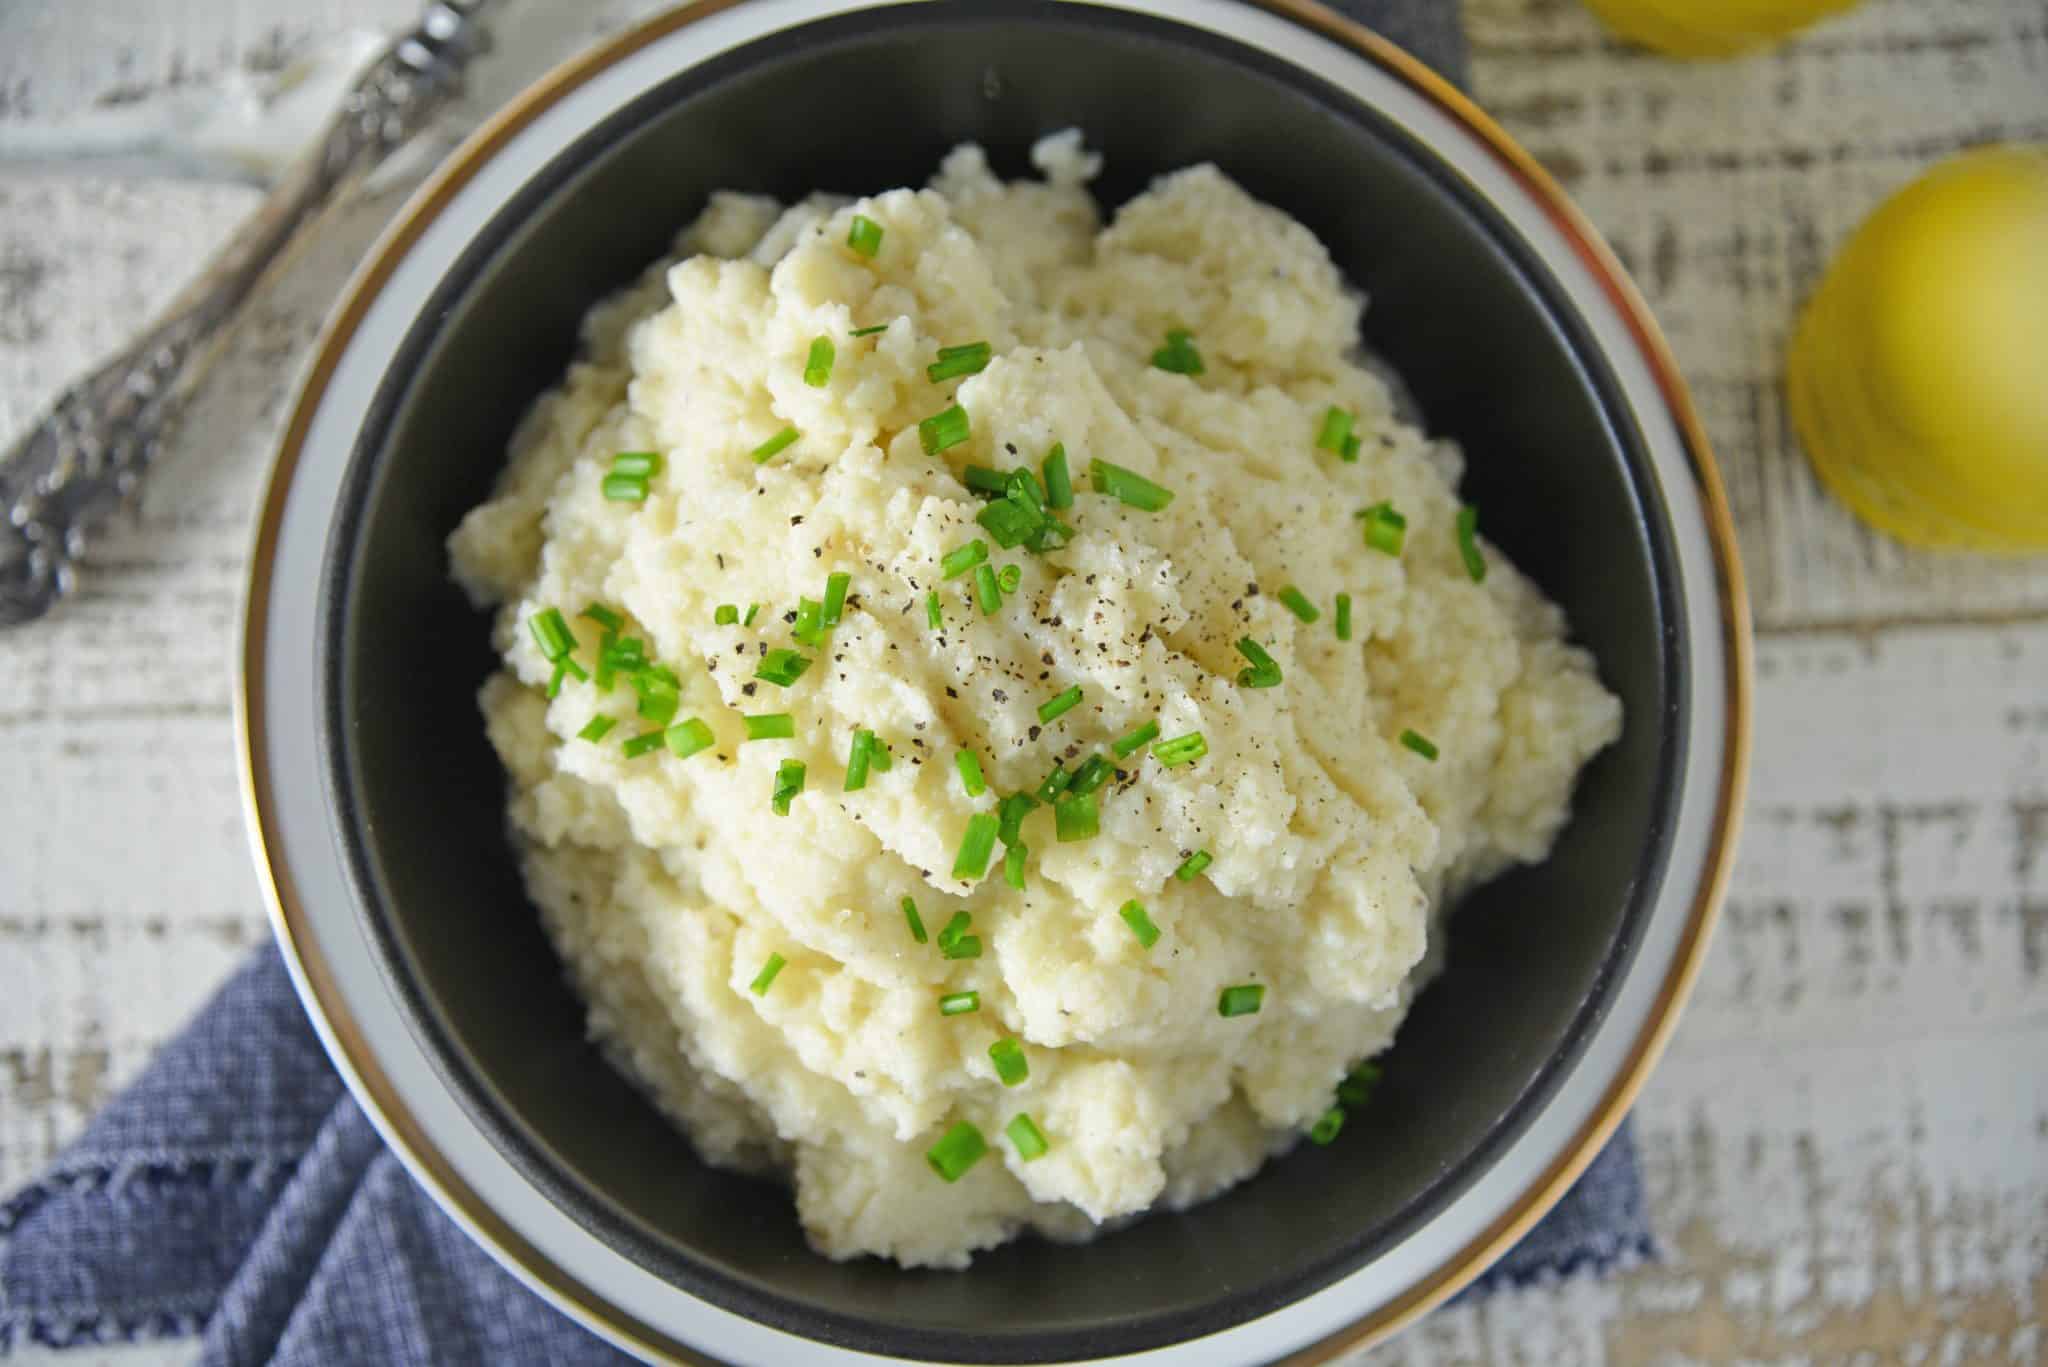 Mashed Cauliflower - Yummy Cauliflower Mashed Potatoes